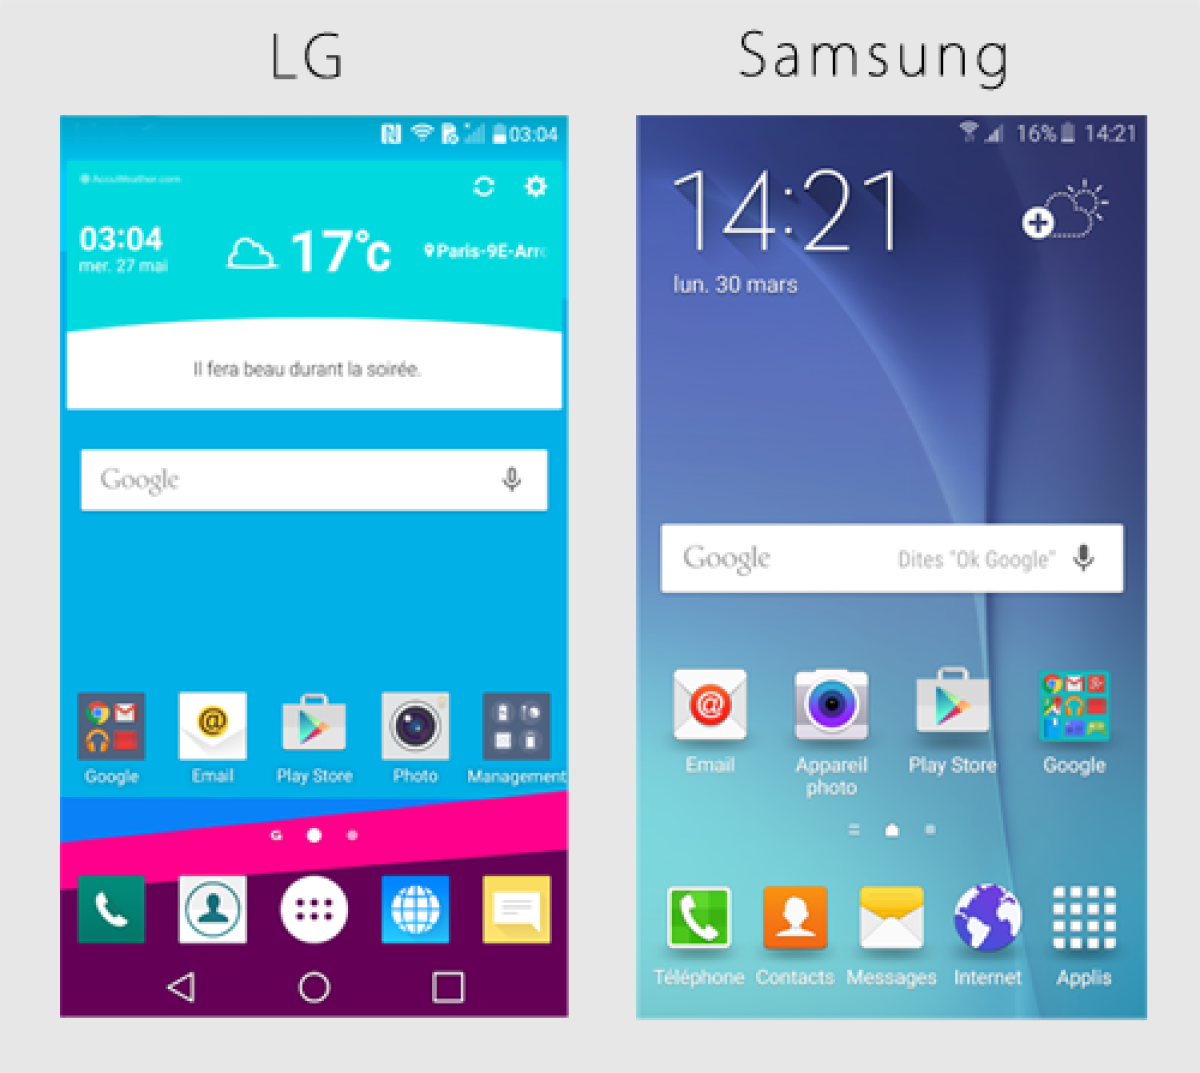 Comparaison des écrans d'accueil du LG et du Samsung S6, son principal concurrent Android. 